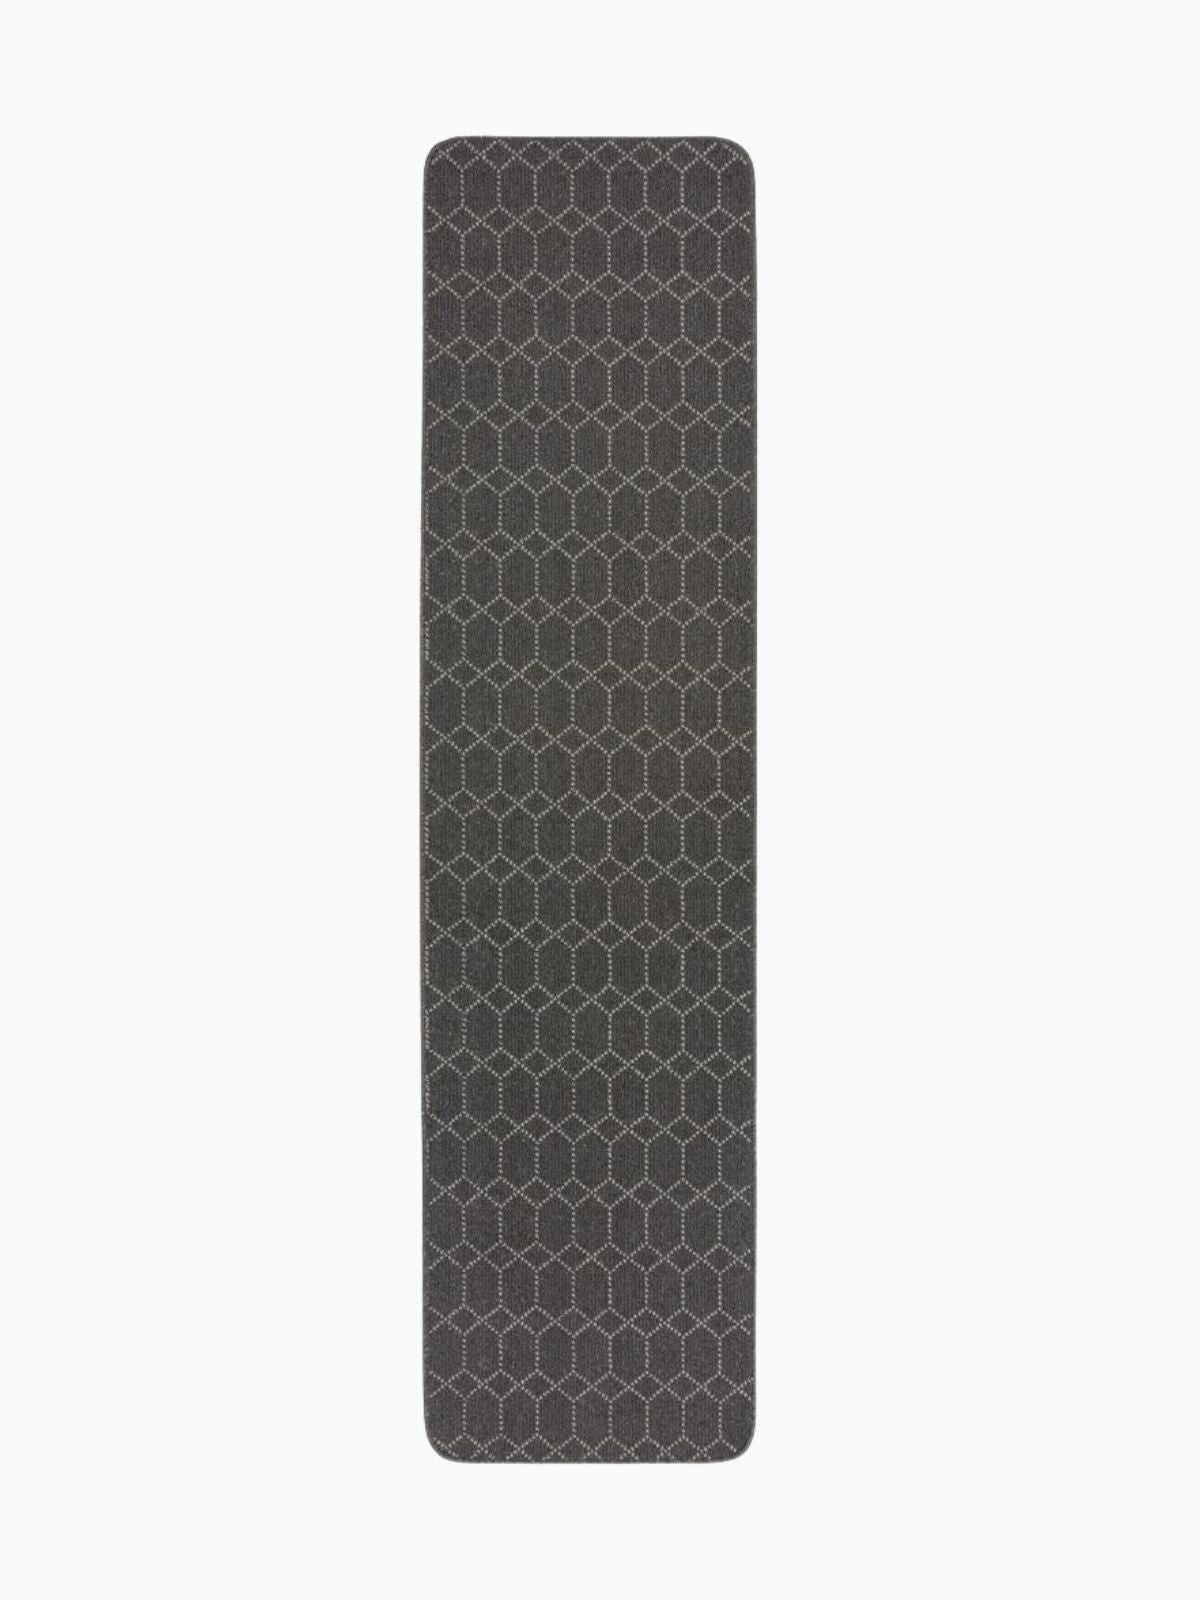 Runner lavabile Argyll in colore grigio scuro 50x230 cm.-1